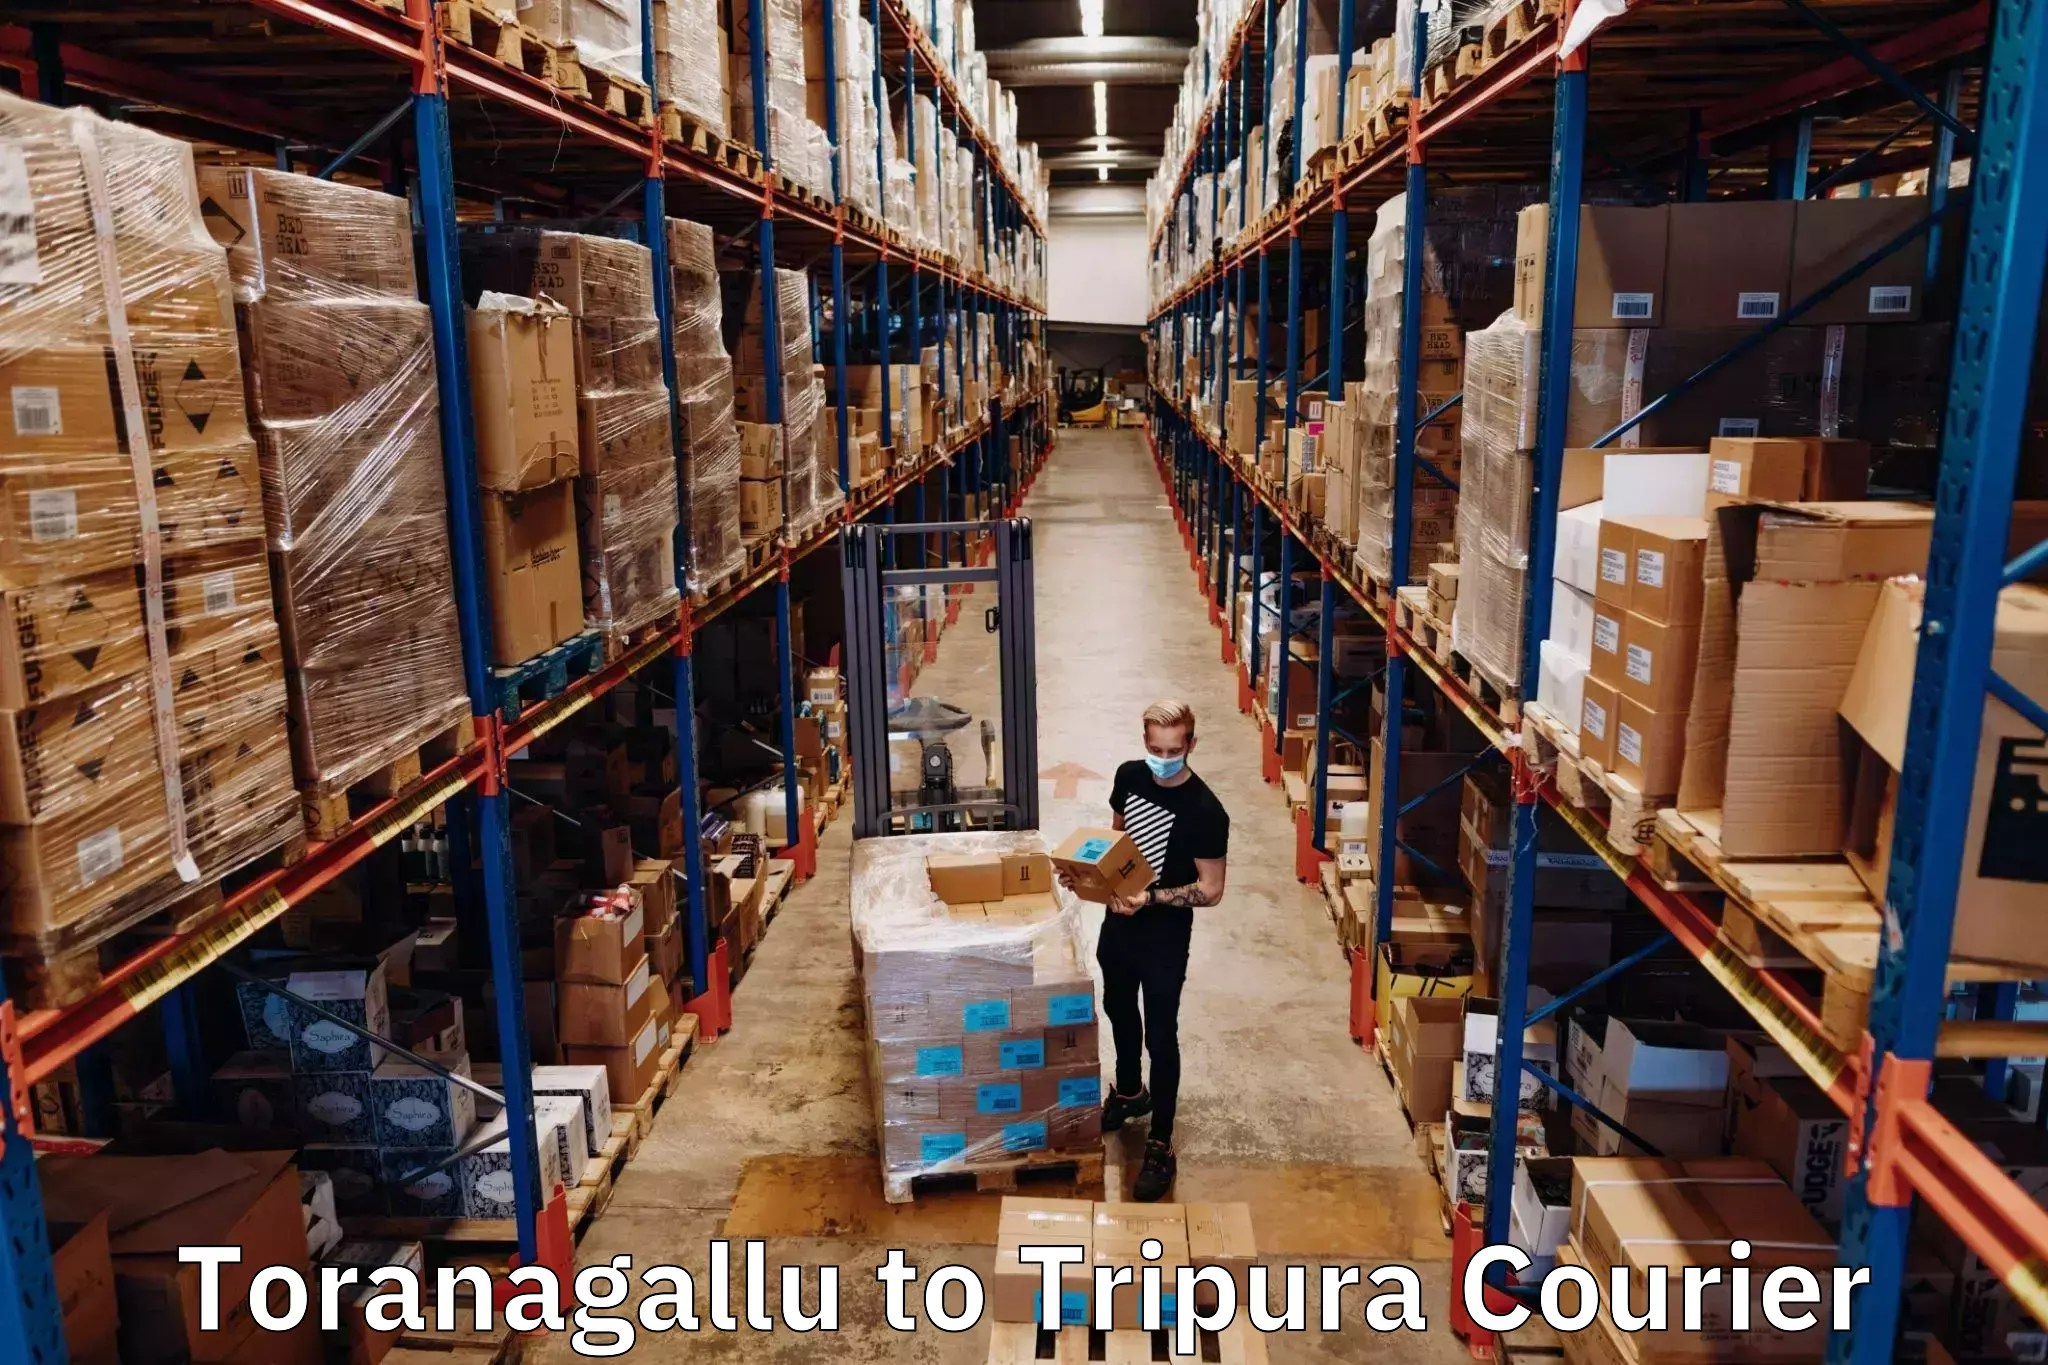 Sustainable courier practices Toranagallu to Amarpur